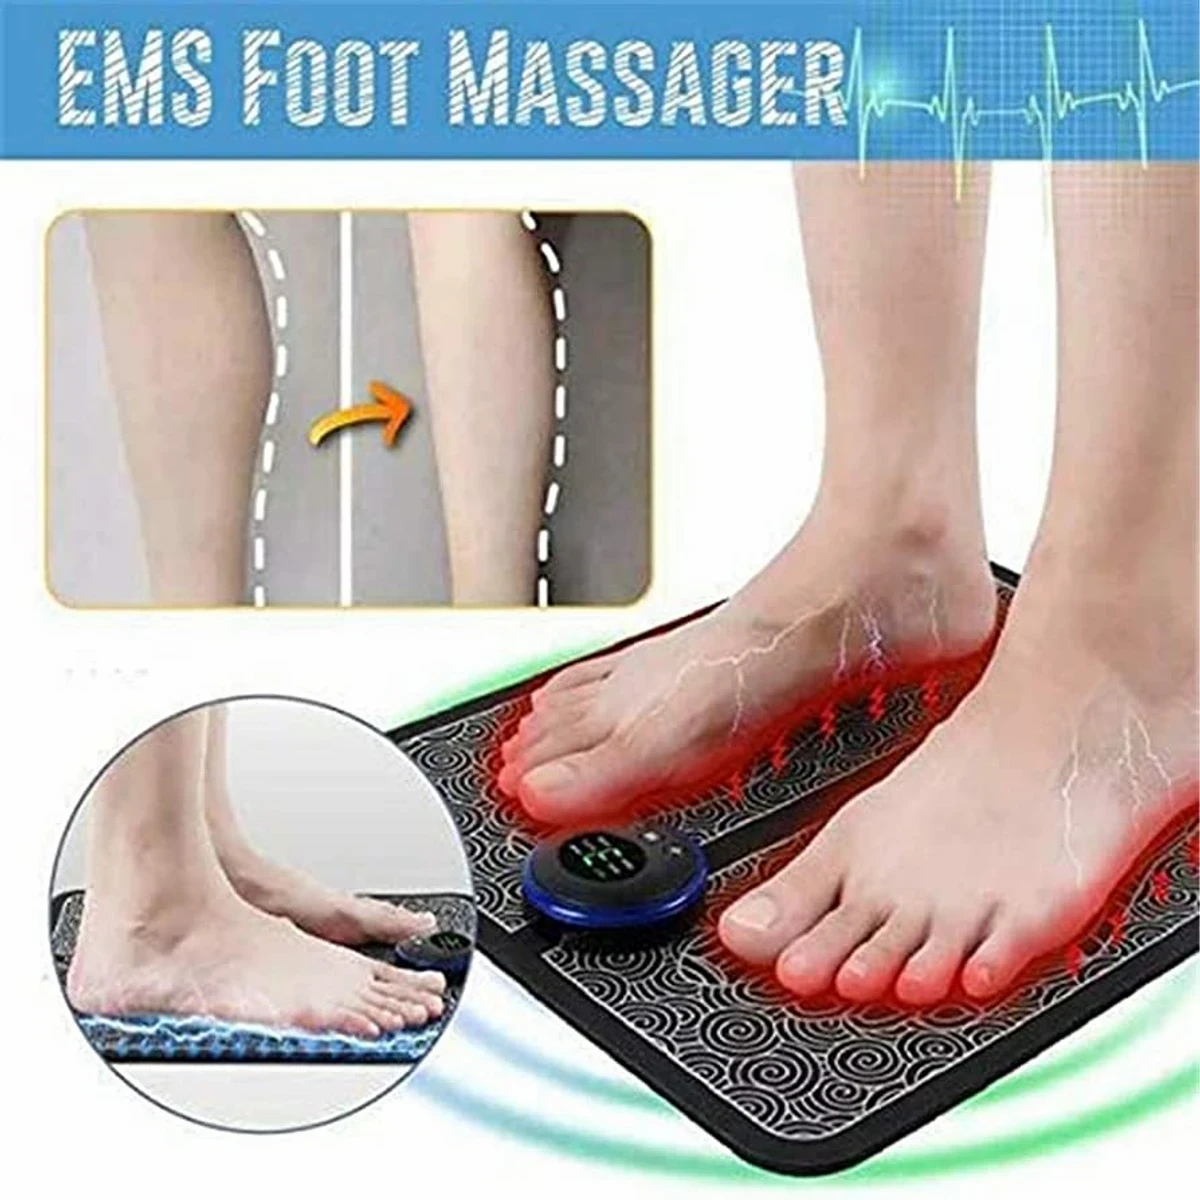 Ems foot massager